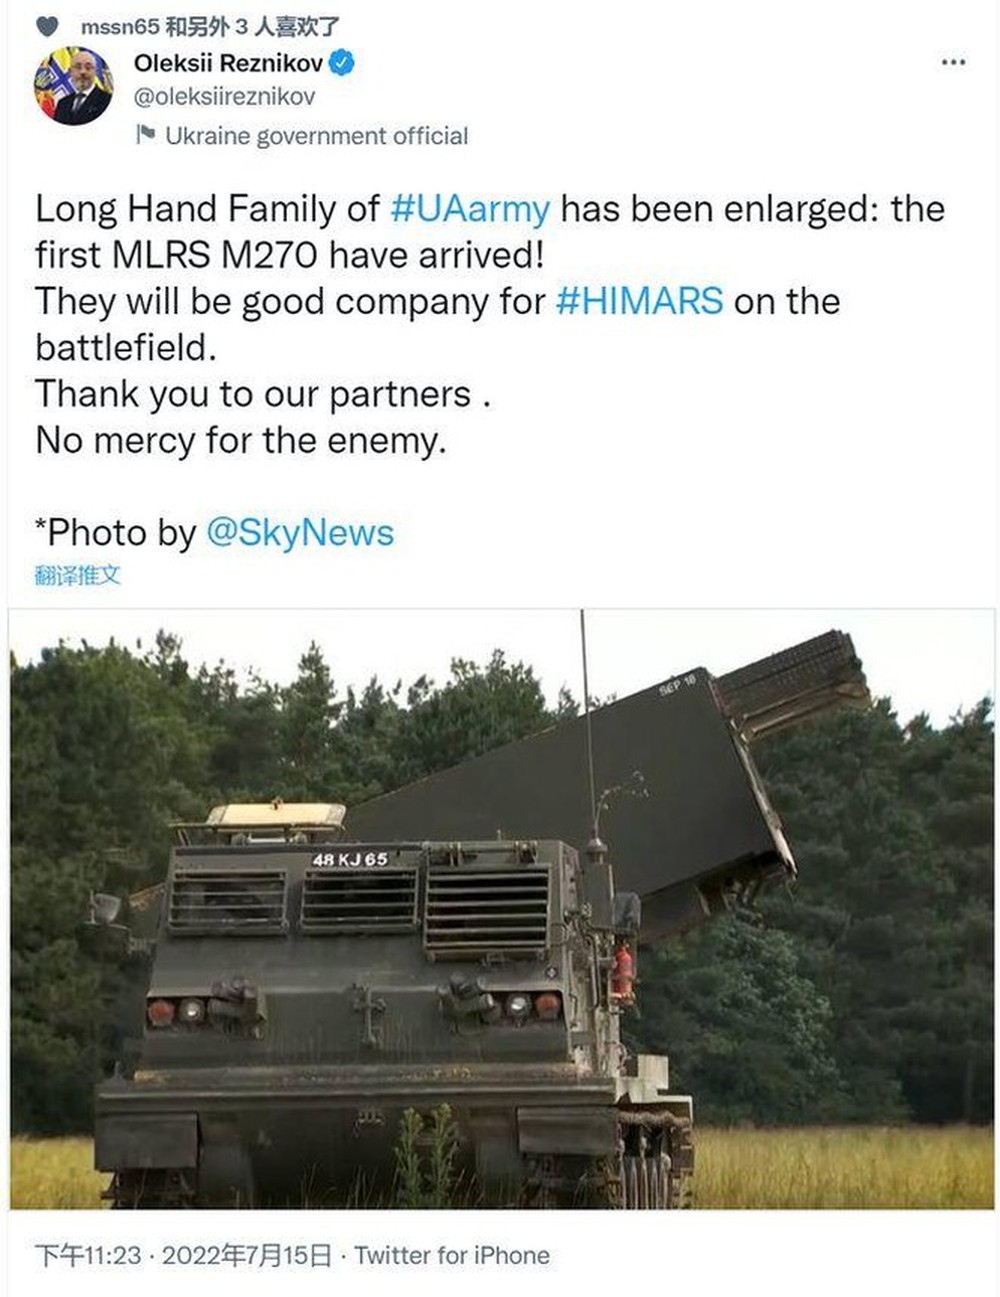 Uy lực của dàn tên lửa M270 Ukraine vừa nhận có thể giúp thay đổi cục diện chiến trường? - Ảnh 1.